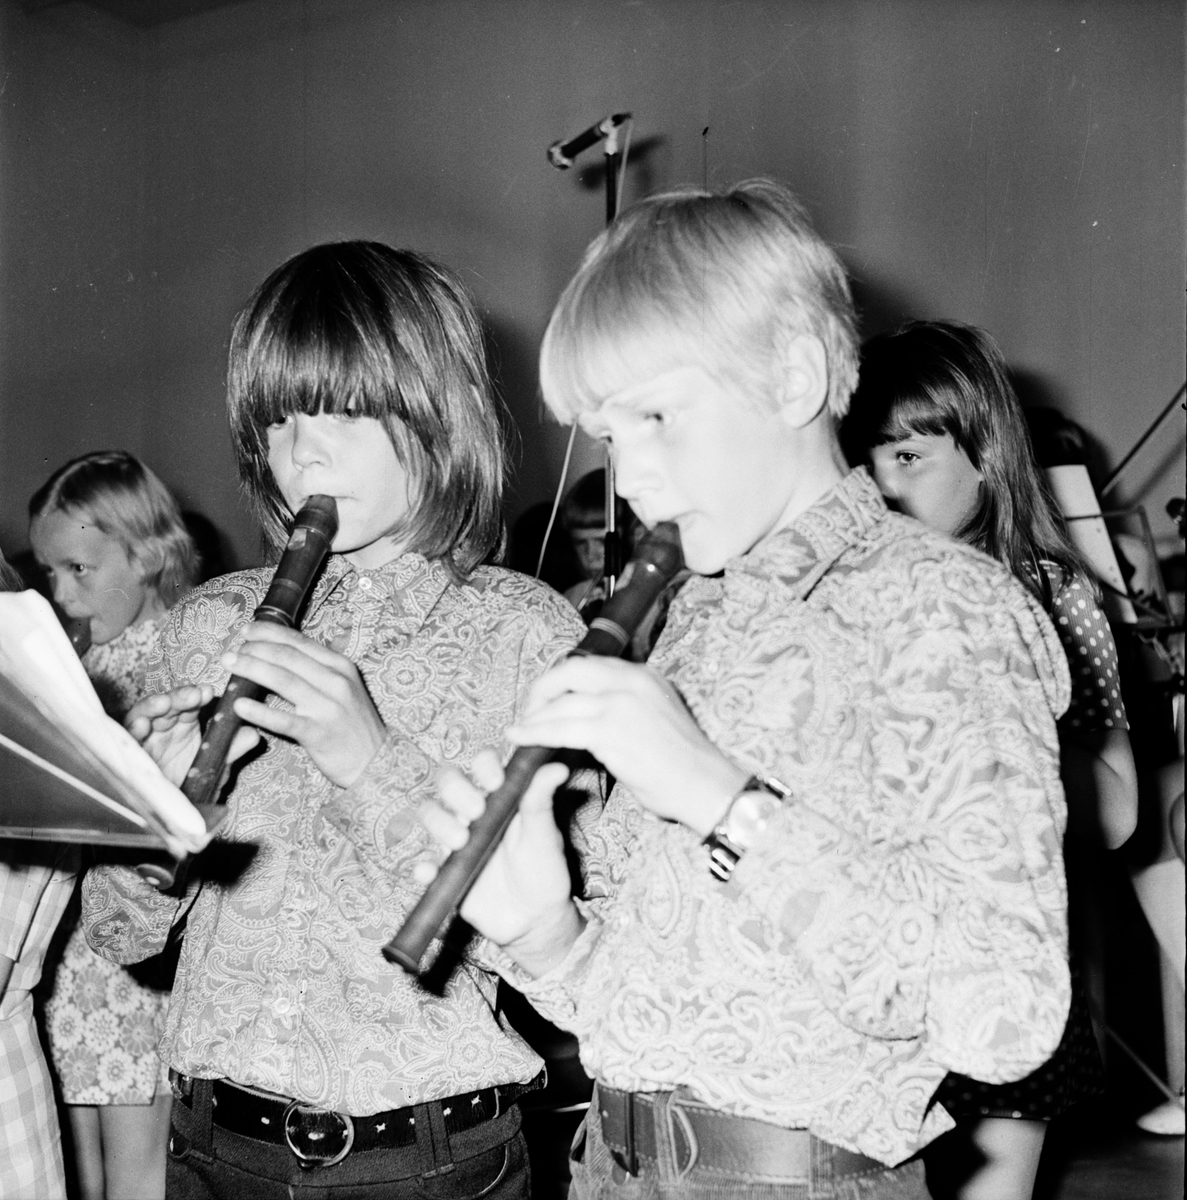 Musikavslutning i centralskolan.
Vårterminen 1972